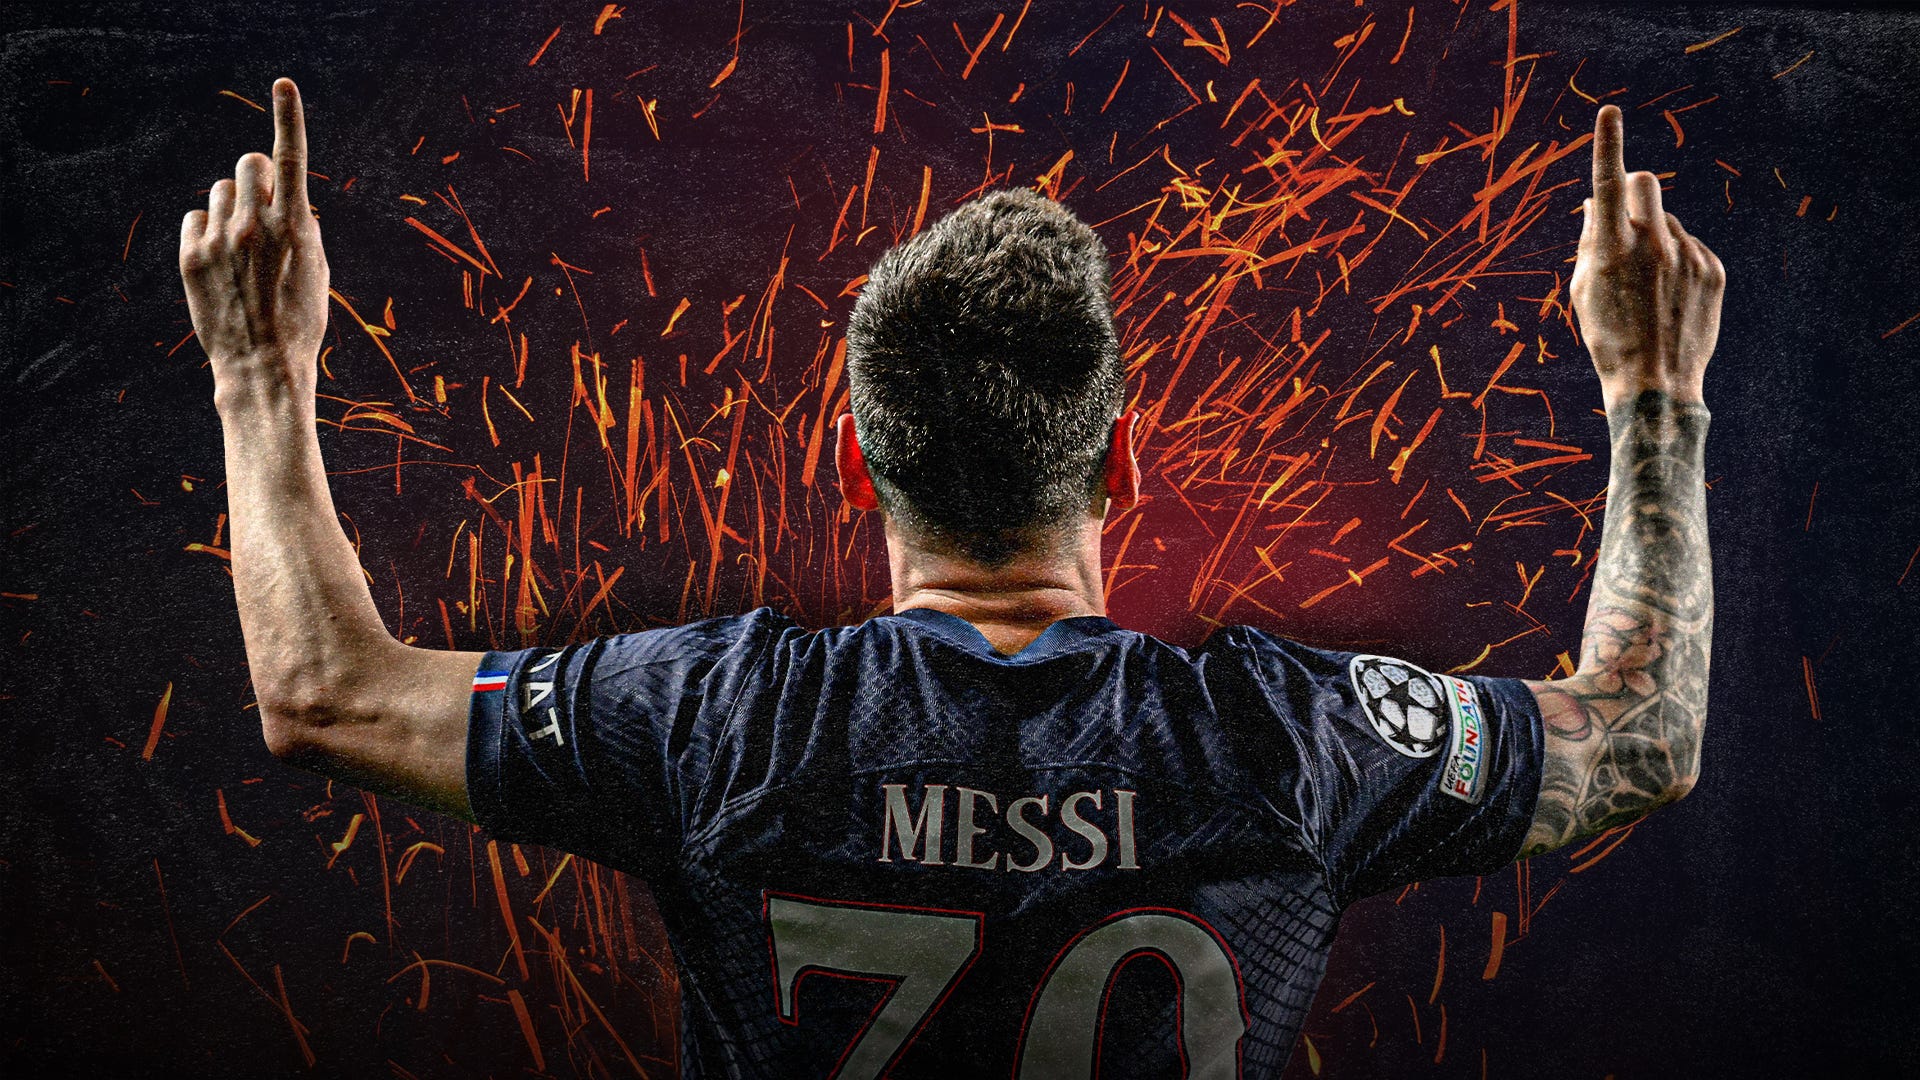 Lionel Messi là ngôi sao bóng đá nổi tiếng trên toàn cầu với kỹ thuật bóng đá tuyệt vời. Hãy xem hình ảnh của anh để được chiêm ngưỡng những pha bóng đầy uy lực và đẳng cấp của Messi.